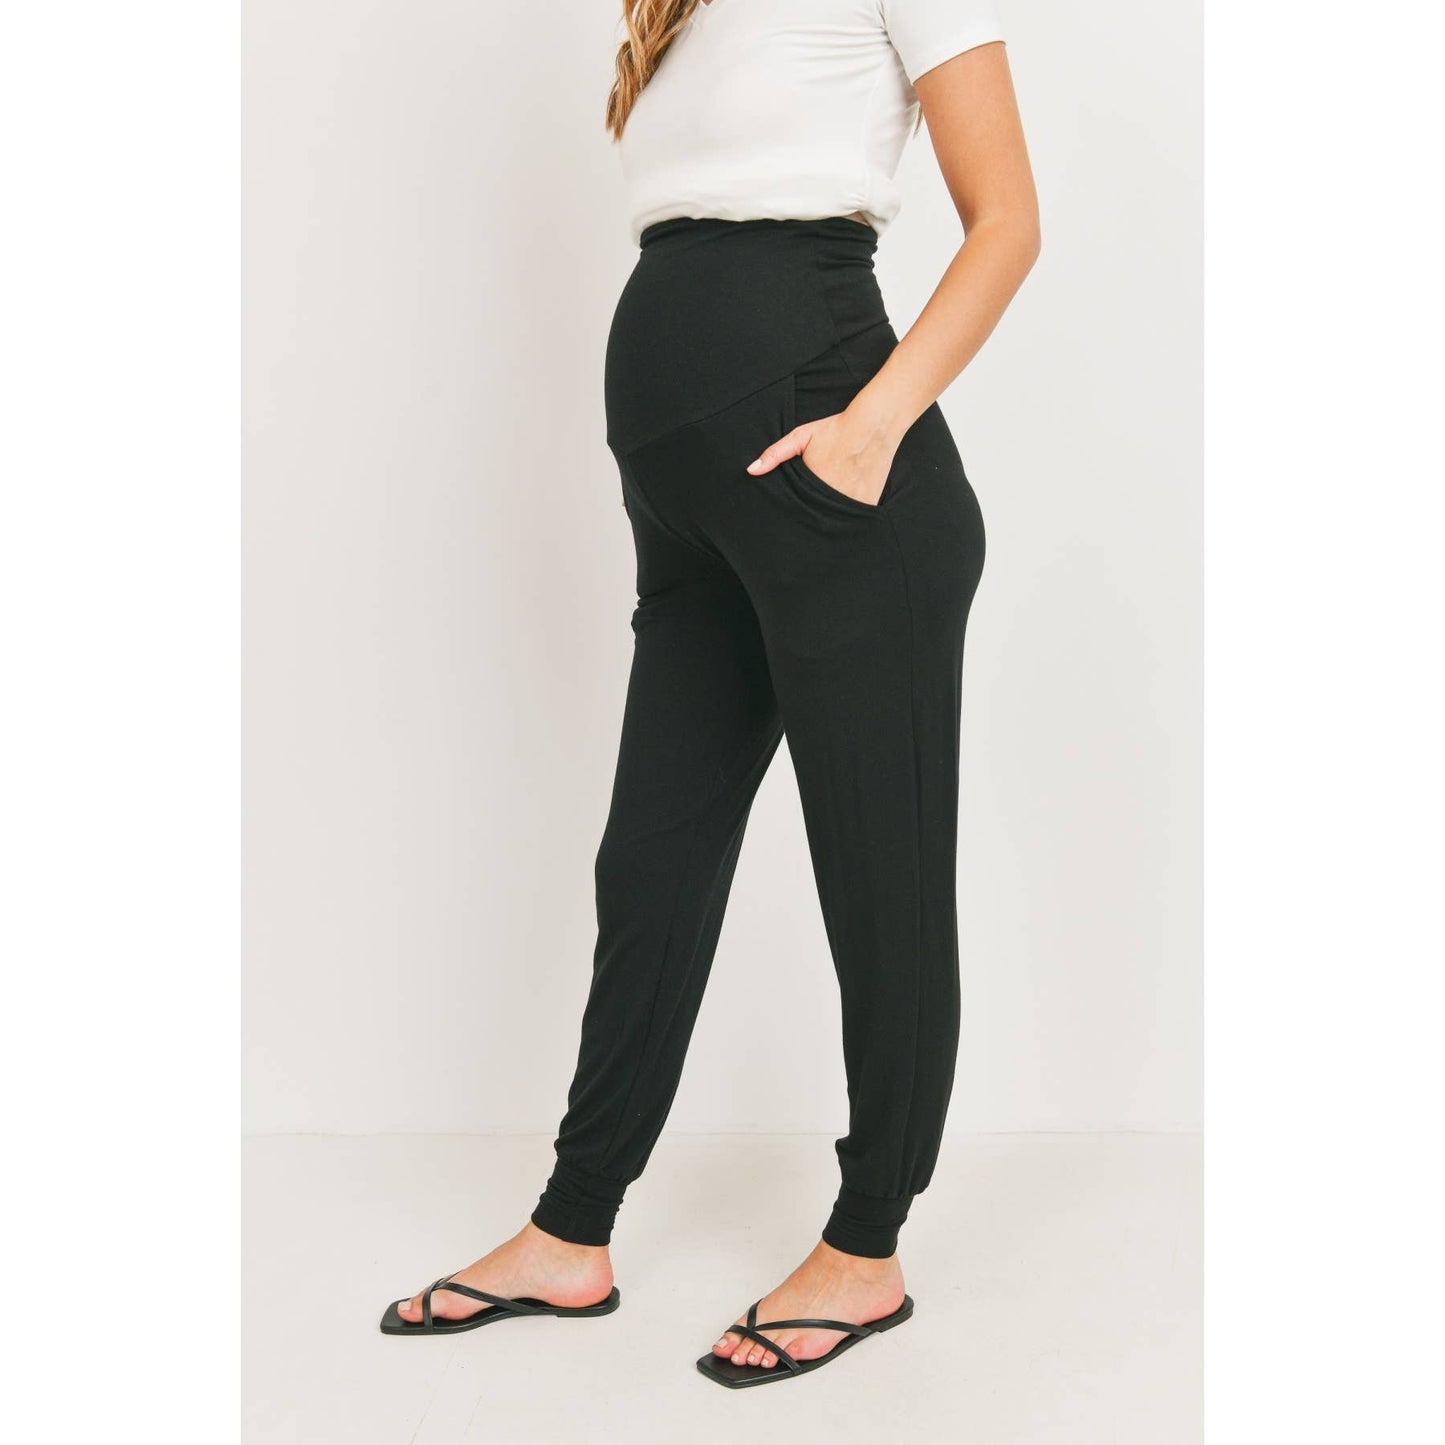 Hello Miz : Foldover Maternity Jogger Pants with Pockets: Black